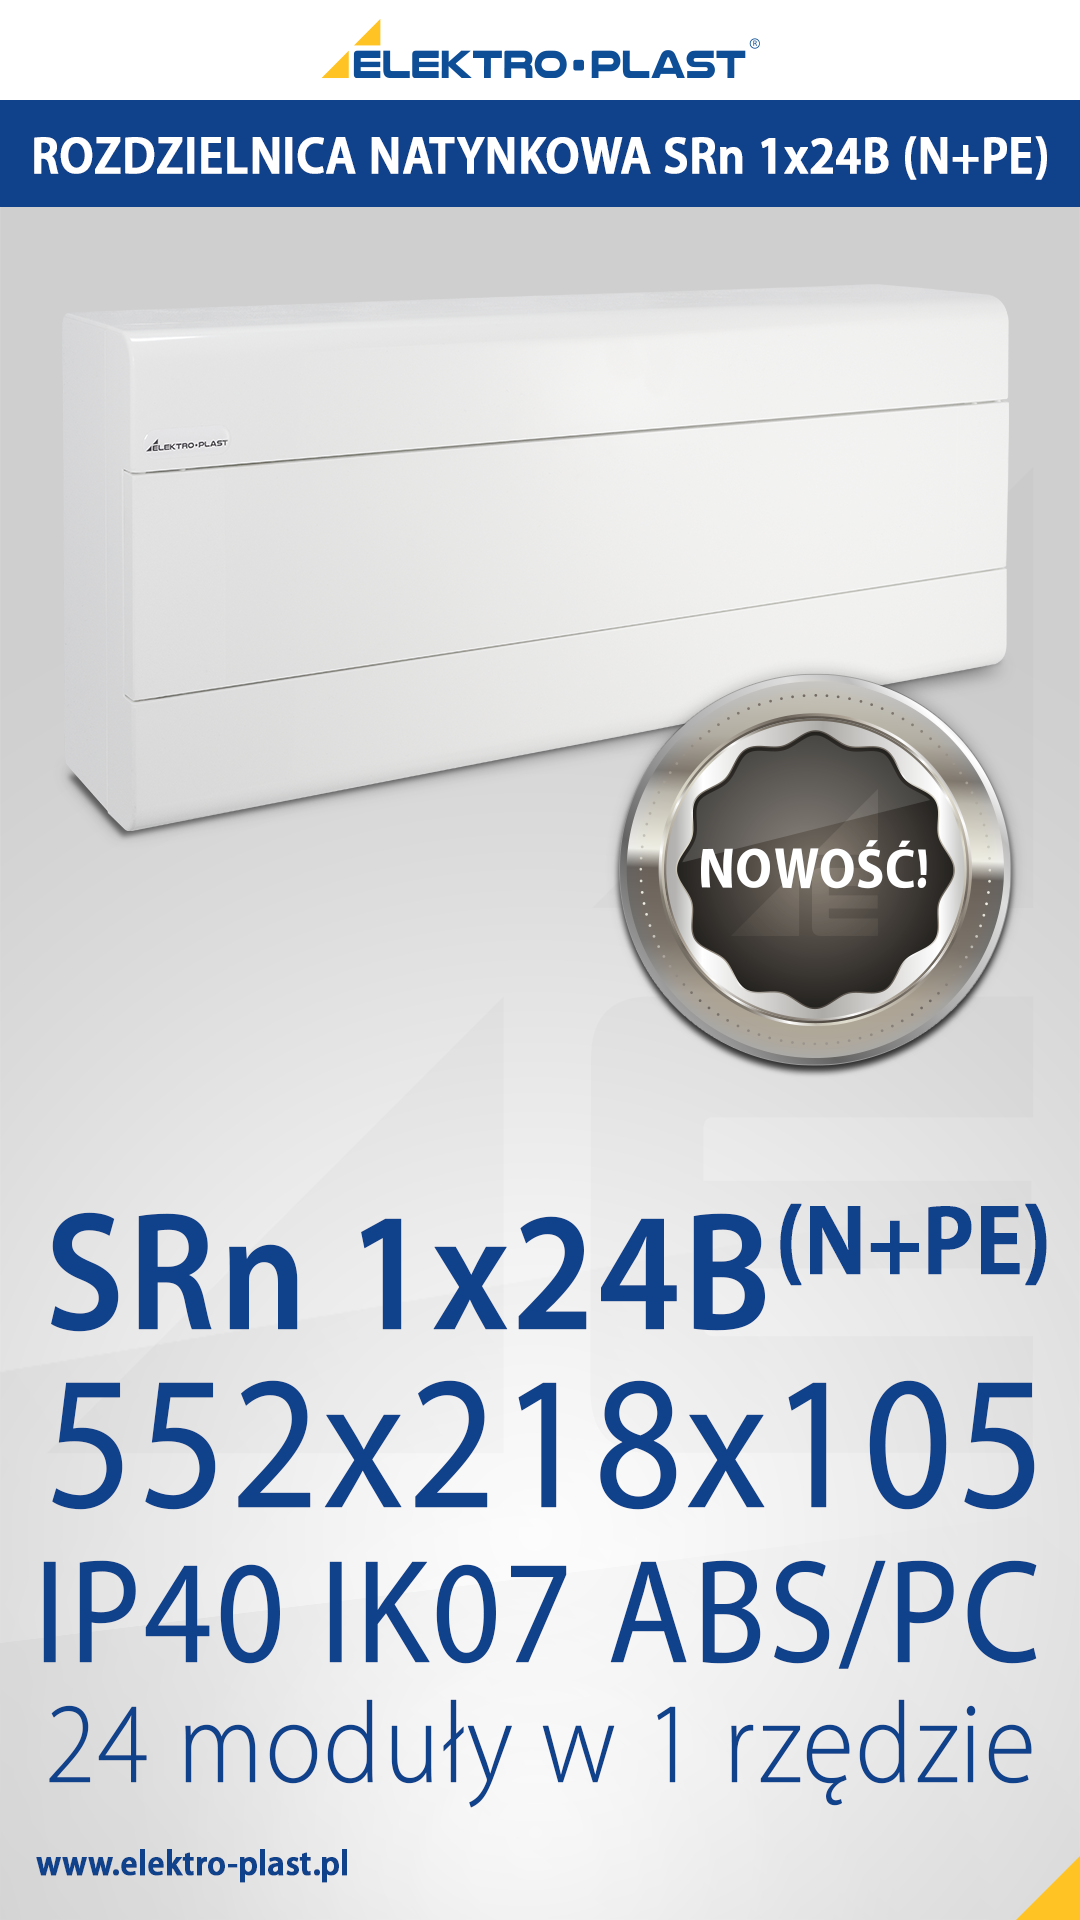 Rozdzielnica Natynkowa SRn 1x24B (N+PE), IP40, elektro-plast